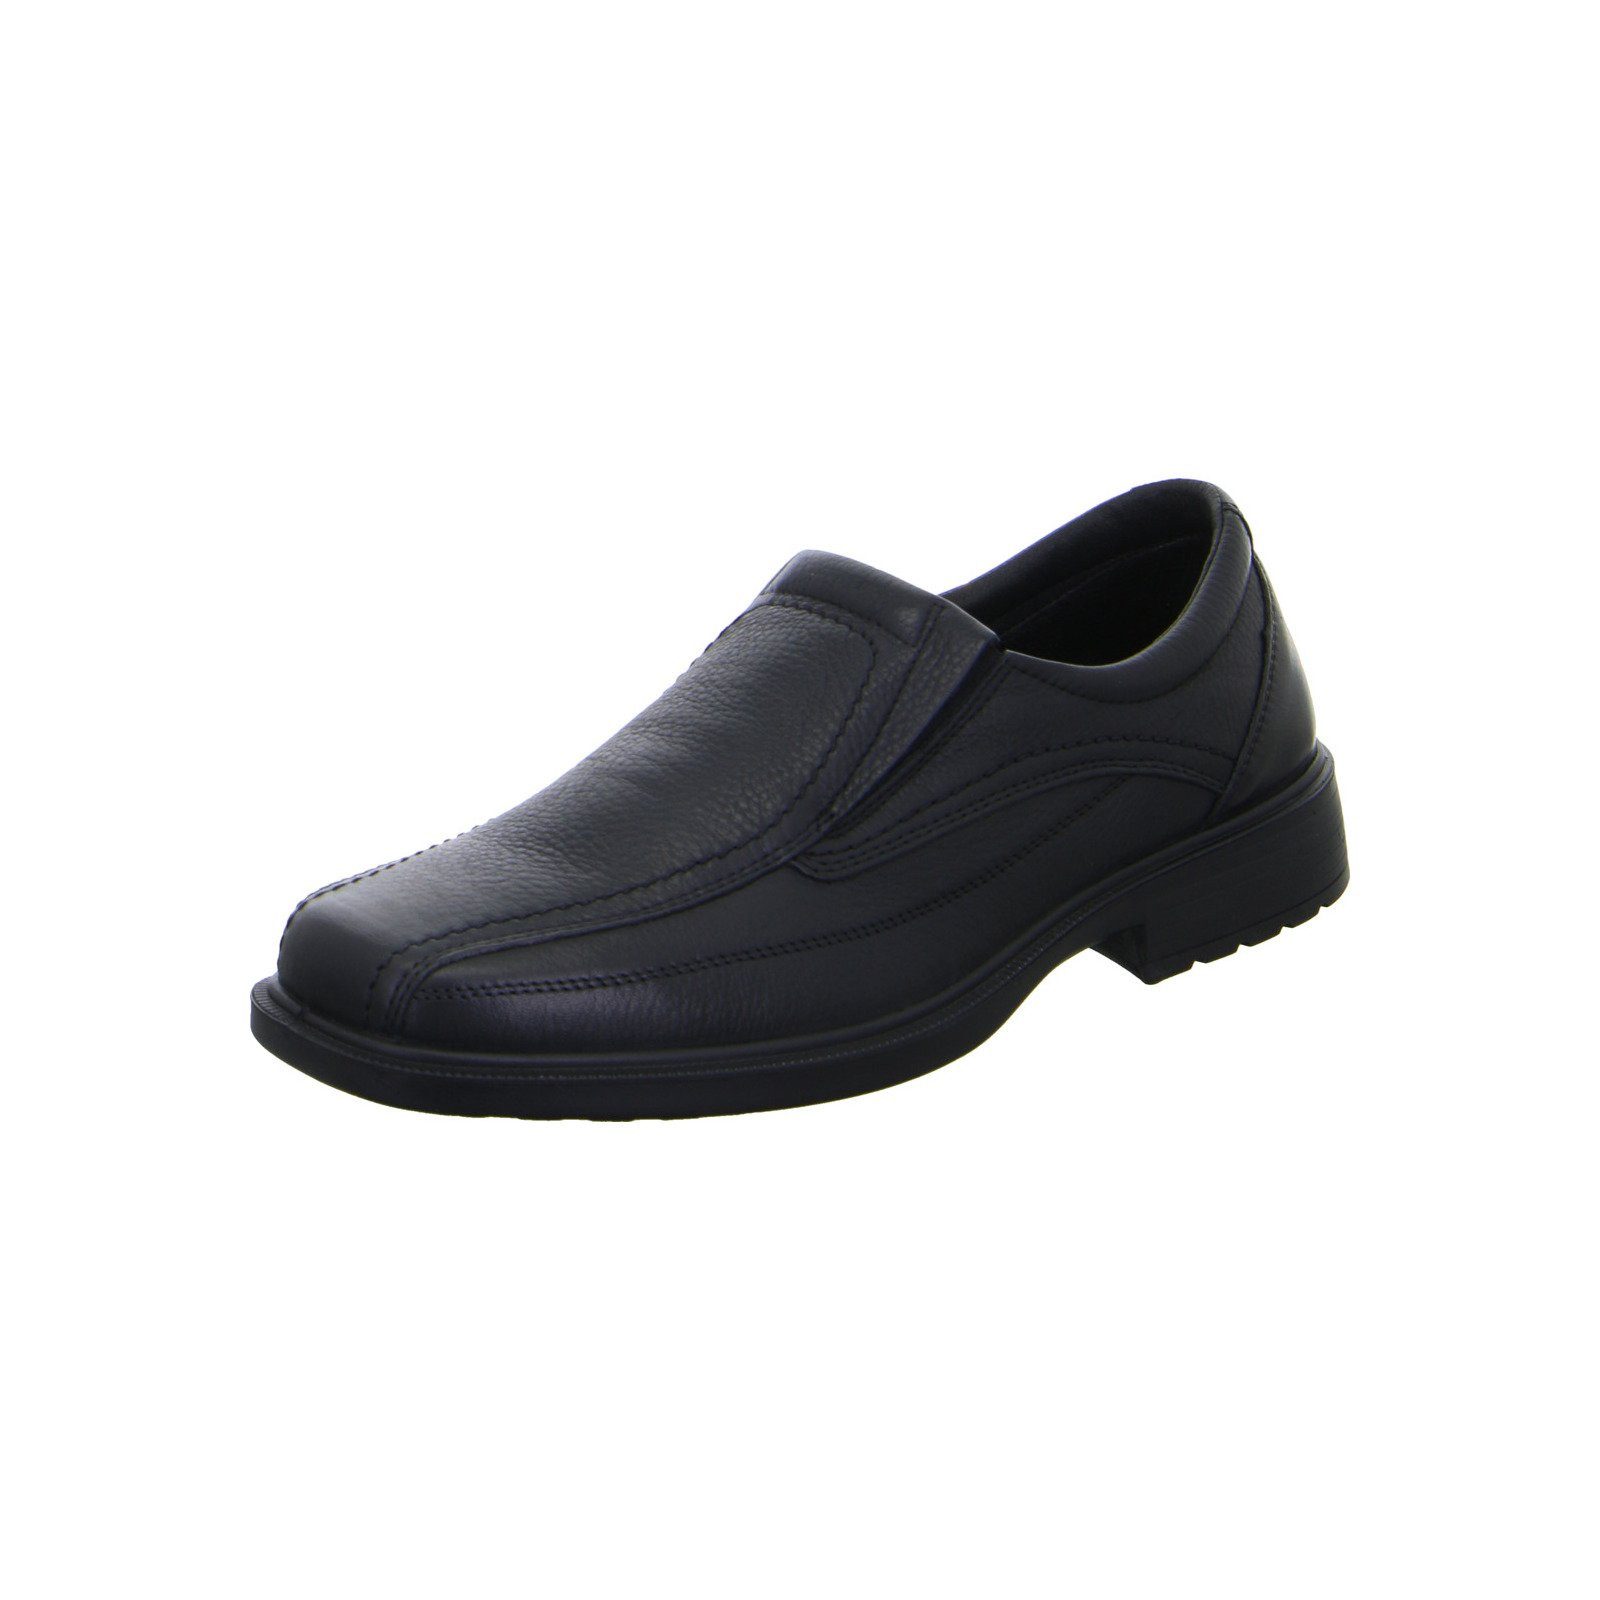 Ara Lorenzo - Herren Schuhe Slipper schwarz